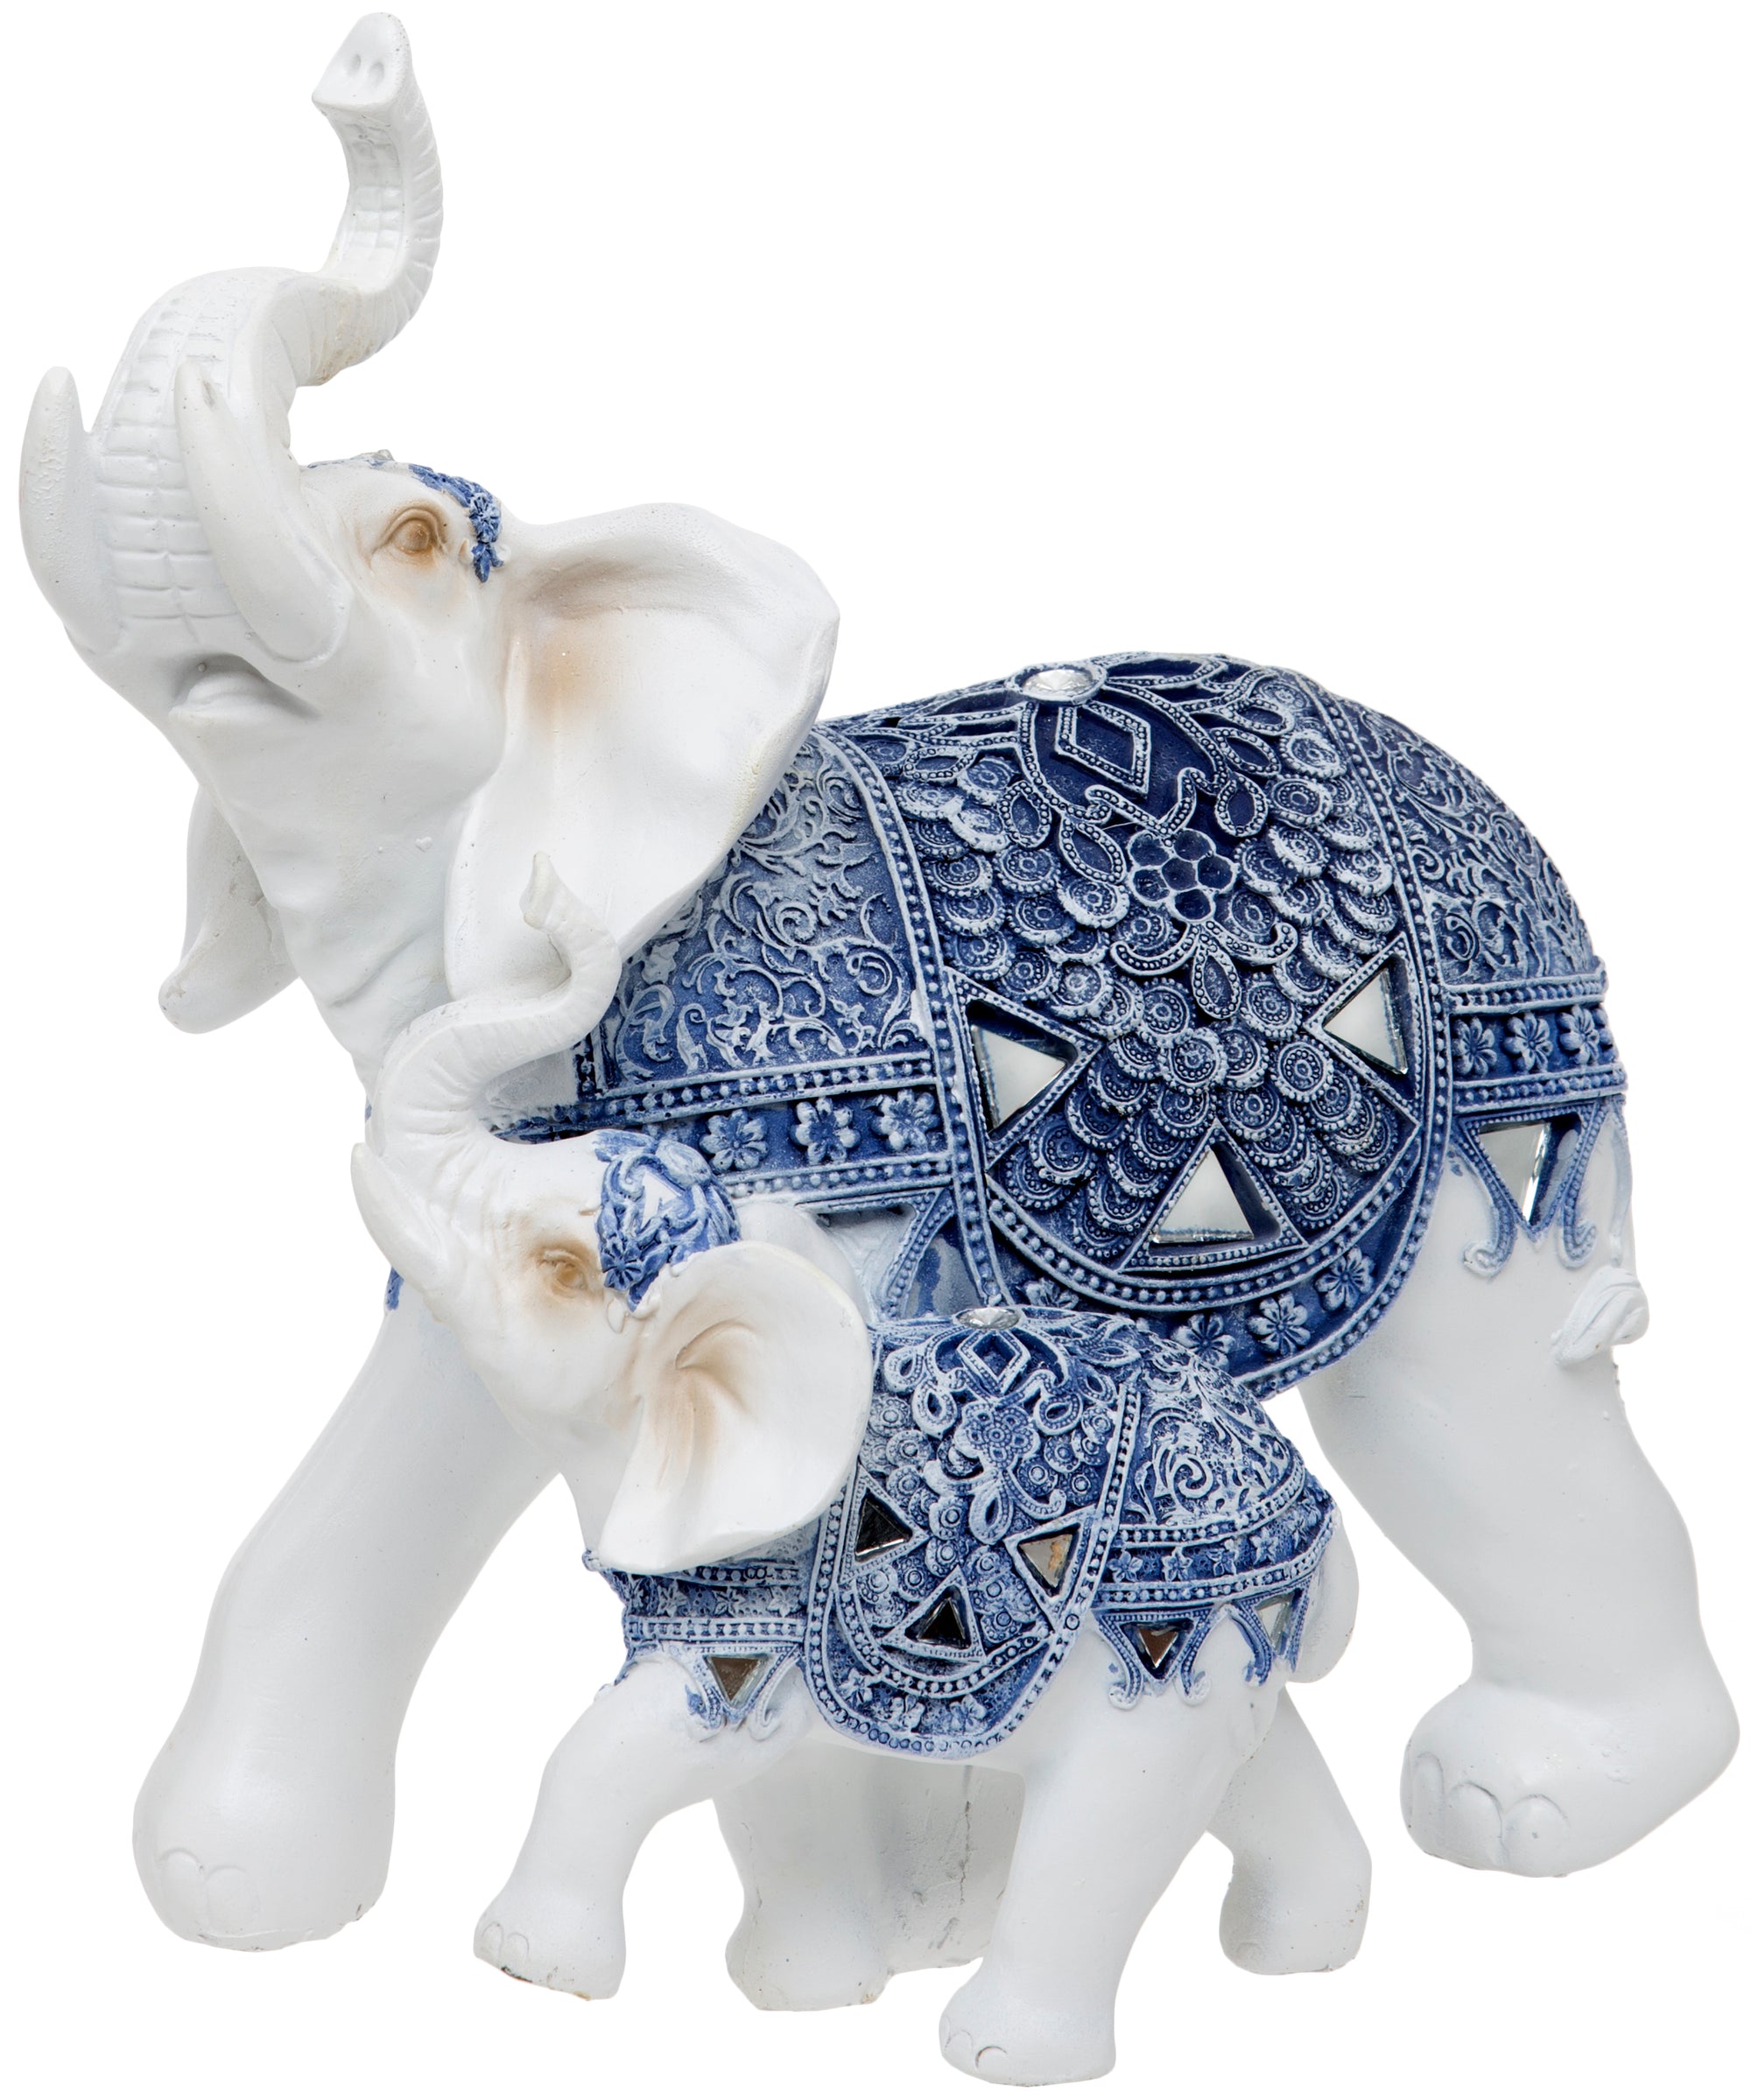 Elephant, Cow & Donkey Ornaments